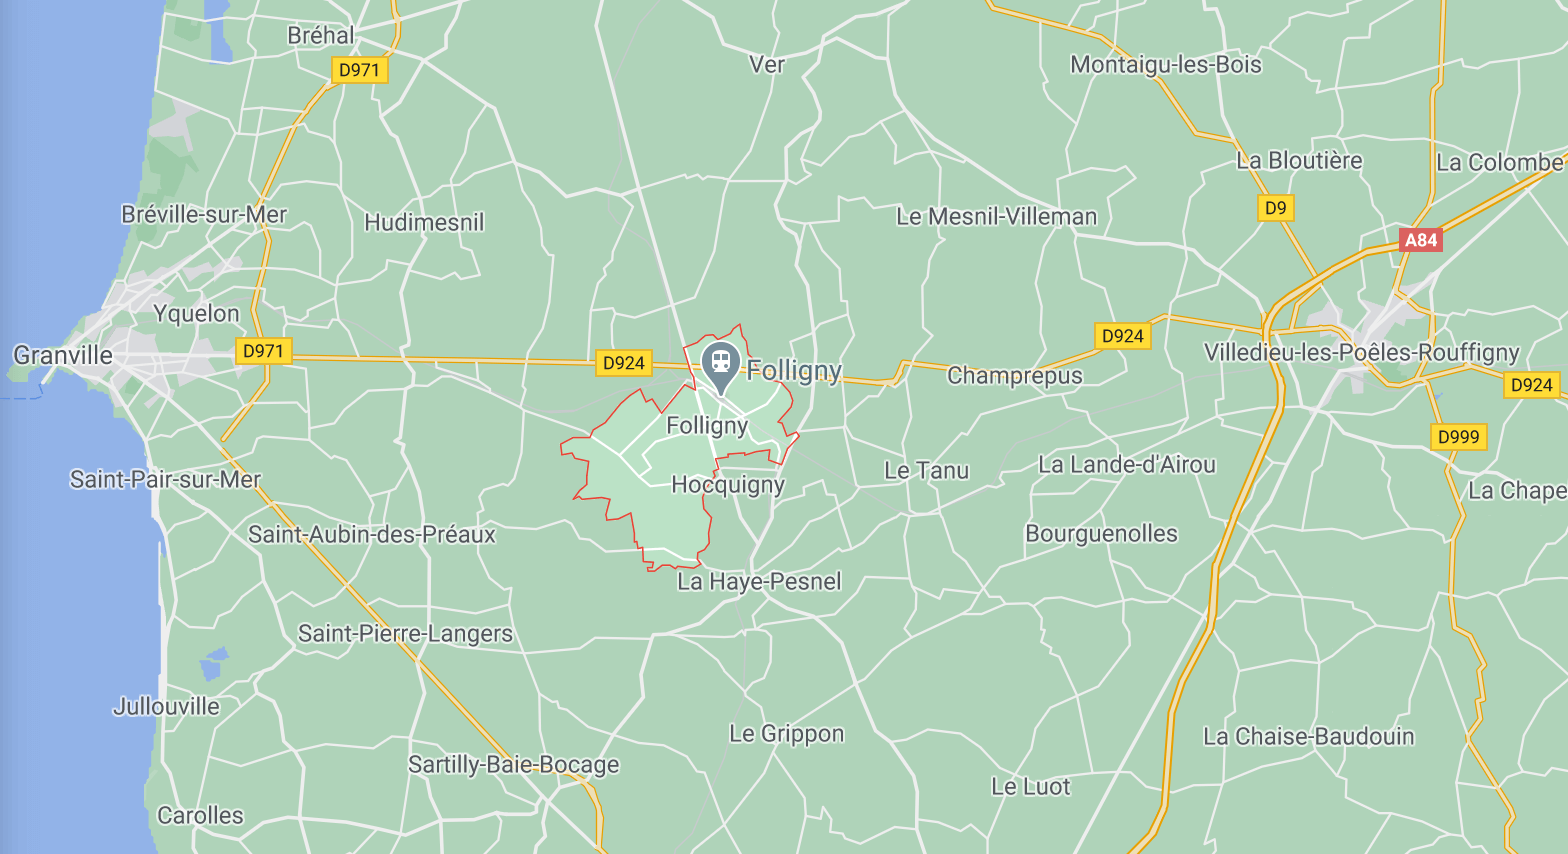 Folligny, La Beslière & Le Mesnil-Drey